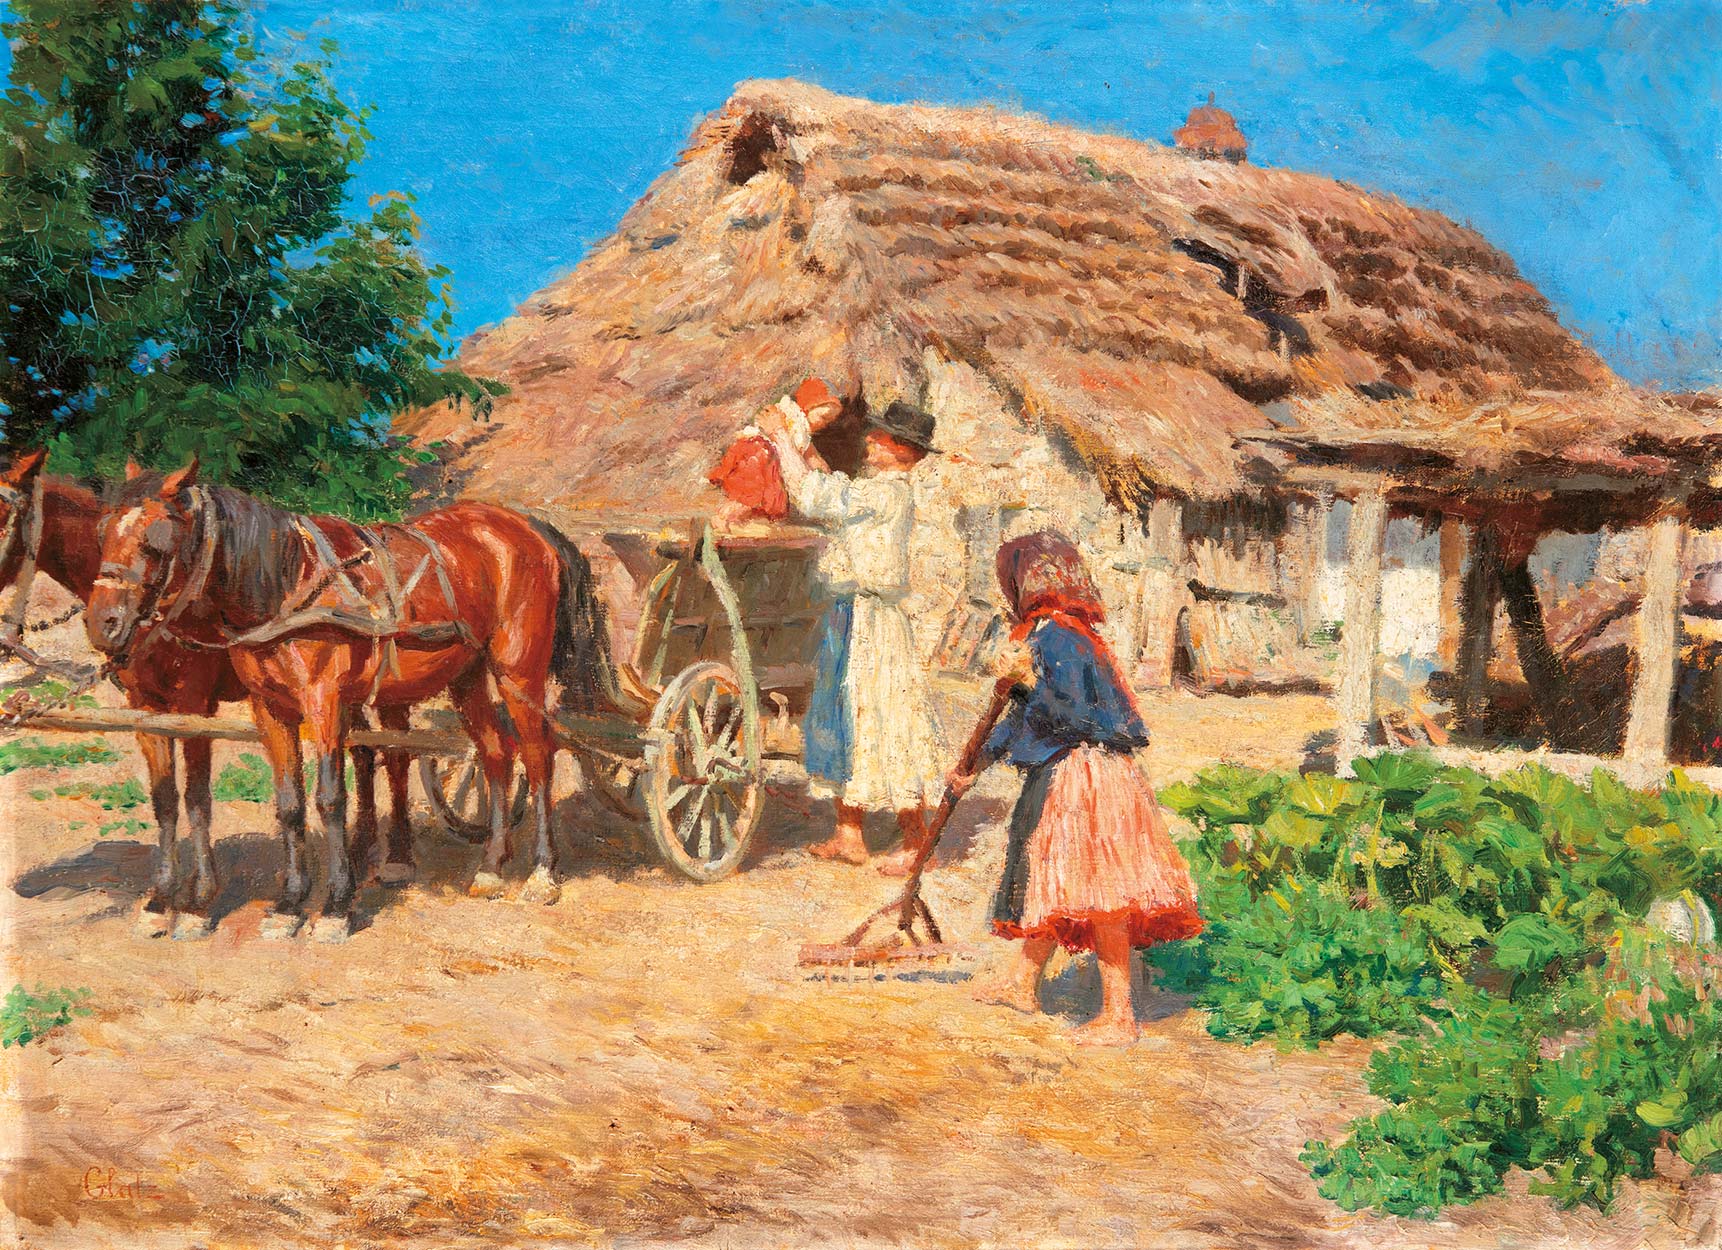 Glatz Oszkár (1872-1958) Arrival (Ritorno), around 1910